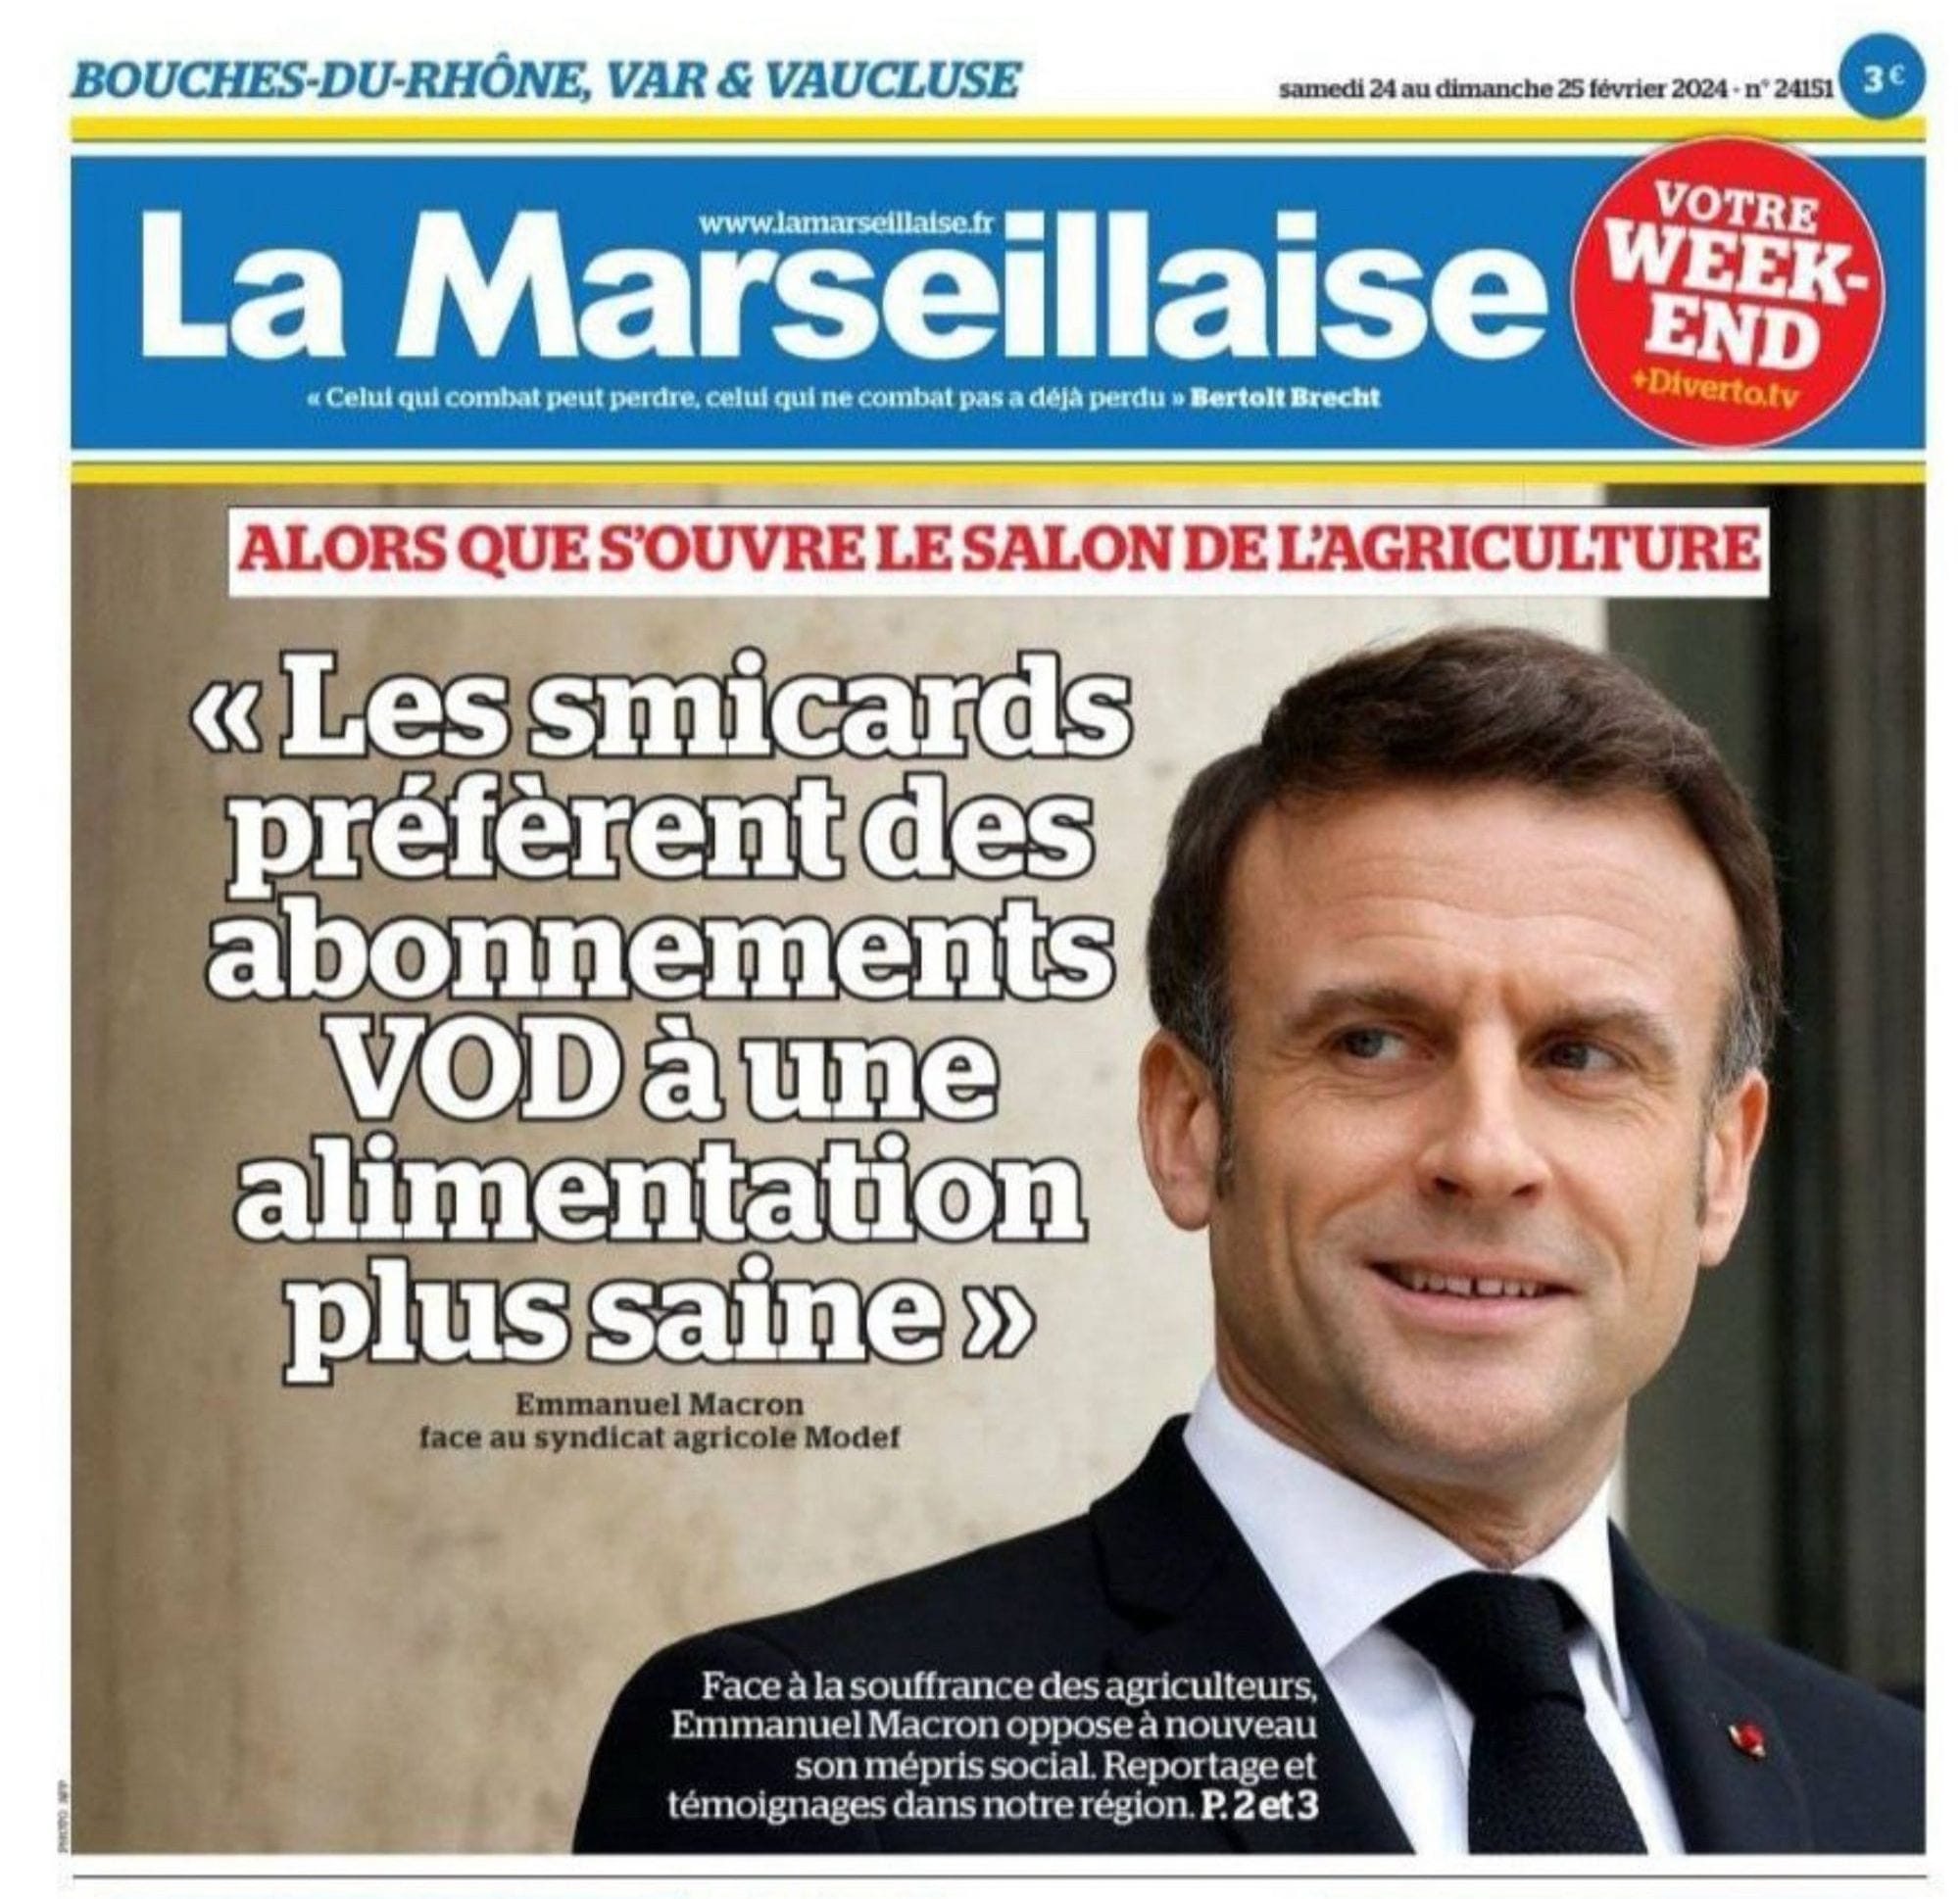 Une du quotidien régional La Marseillaise du 24 février dernier avec la citation d'Emmanuel Macron en Une